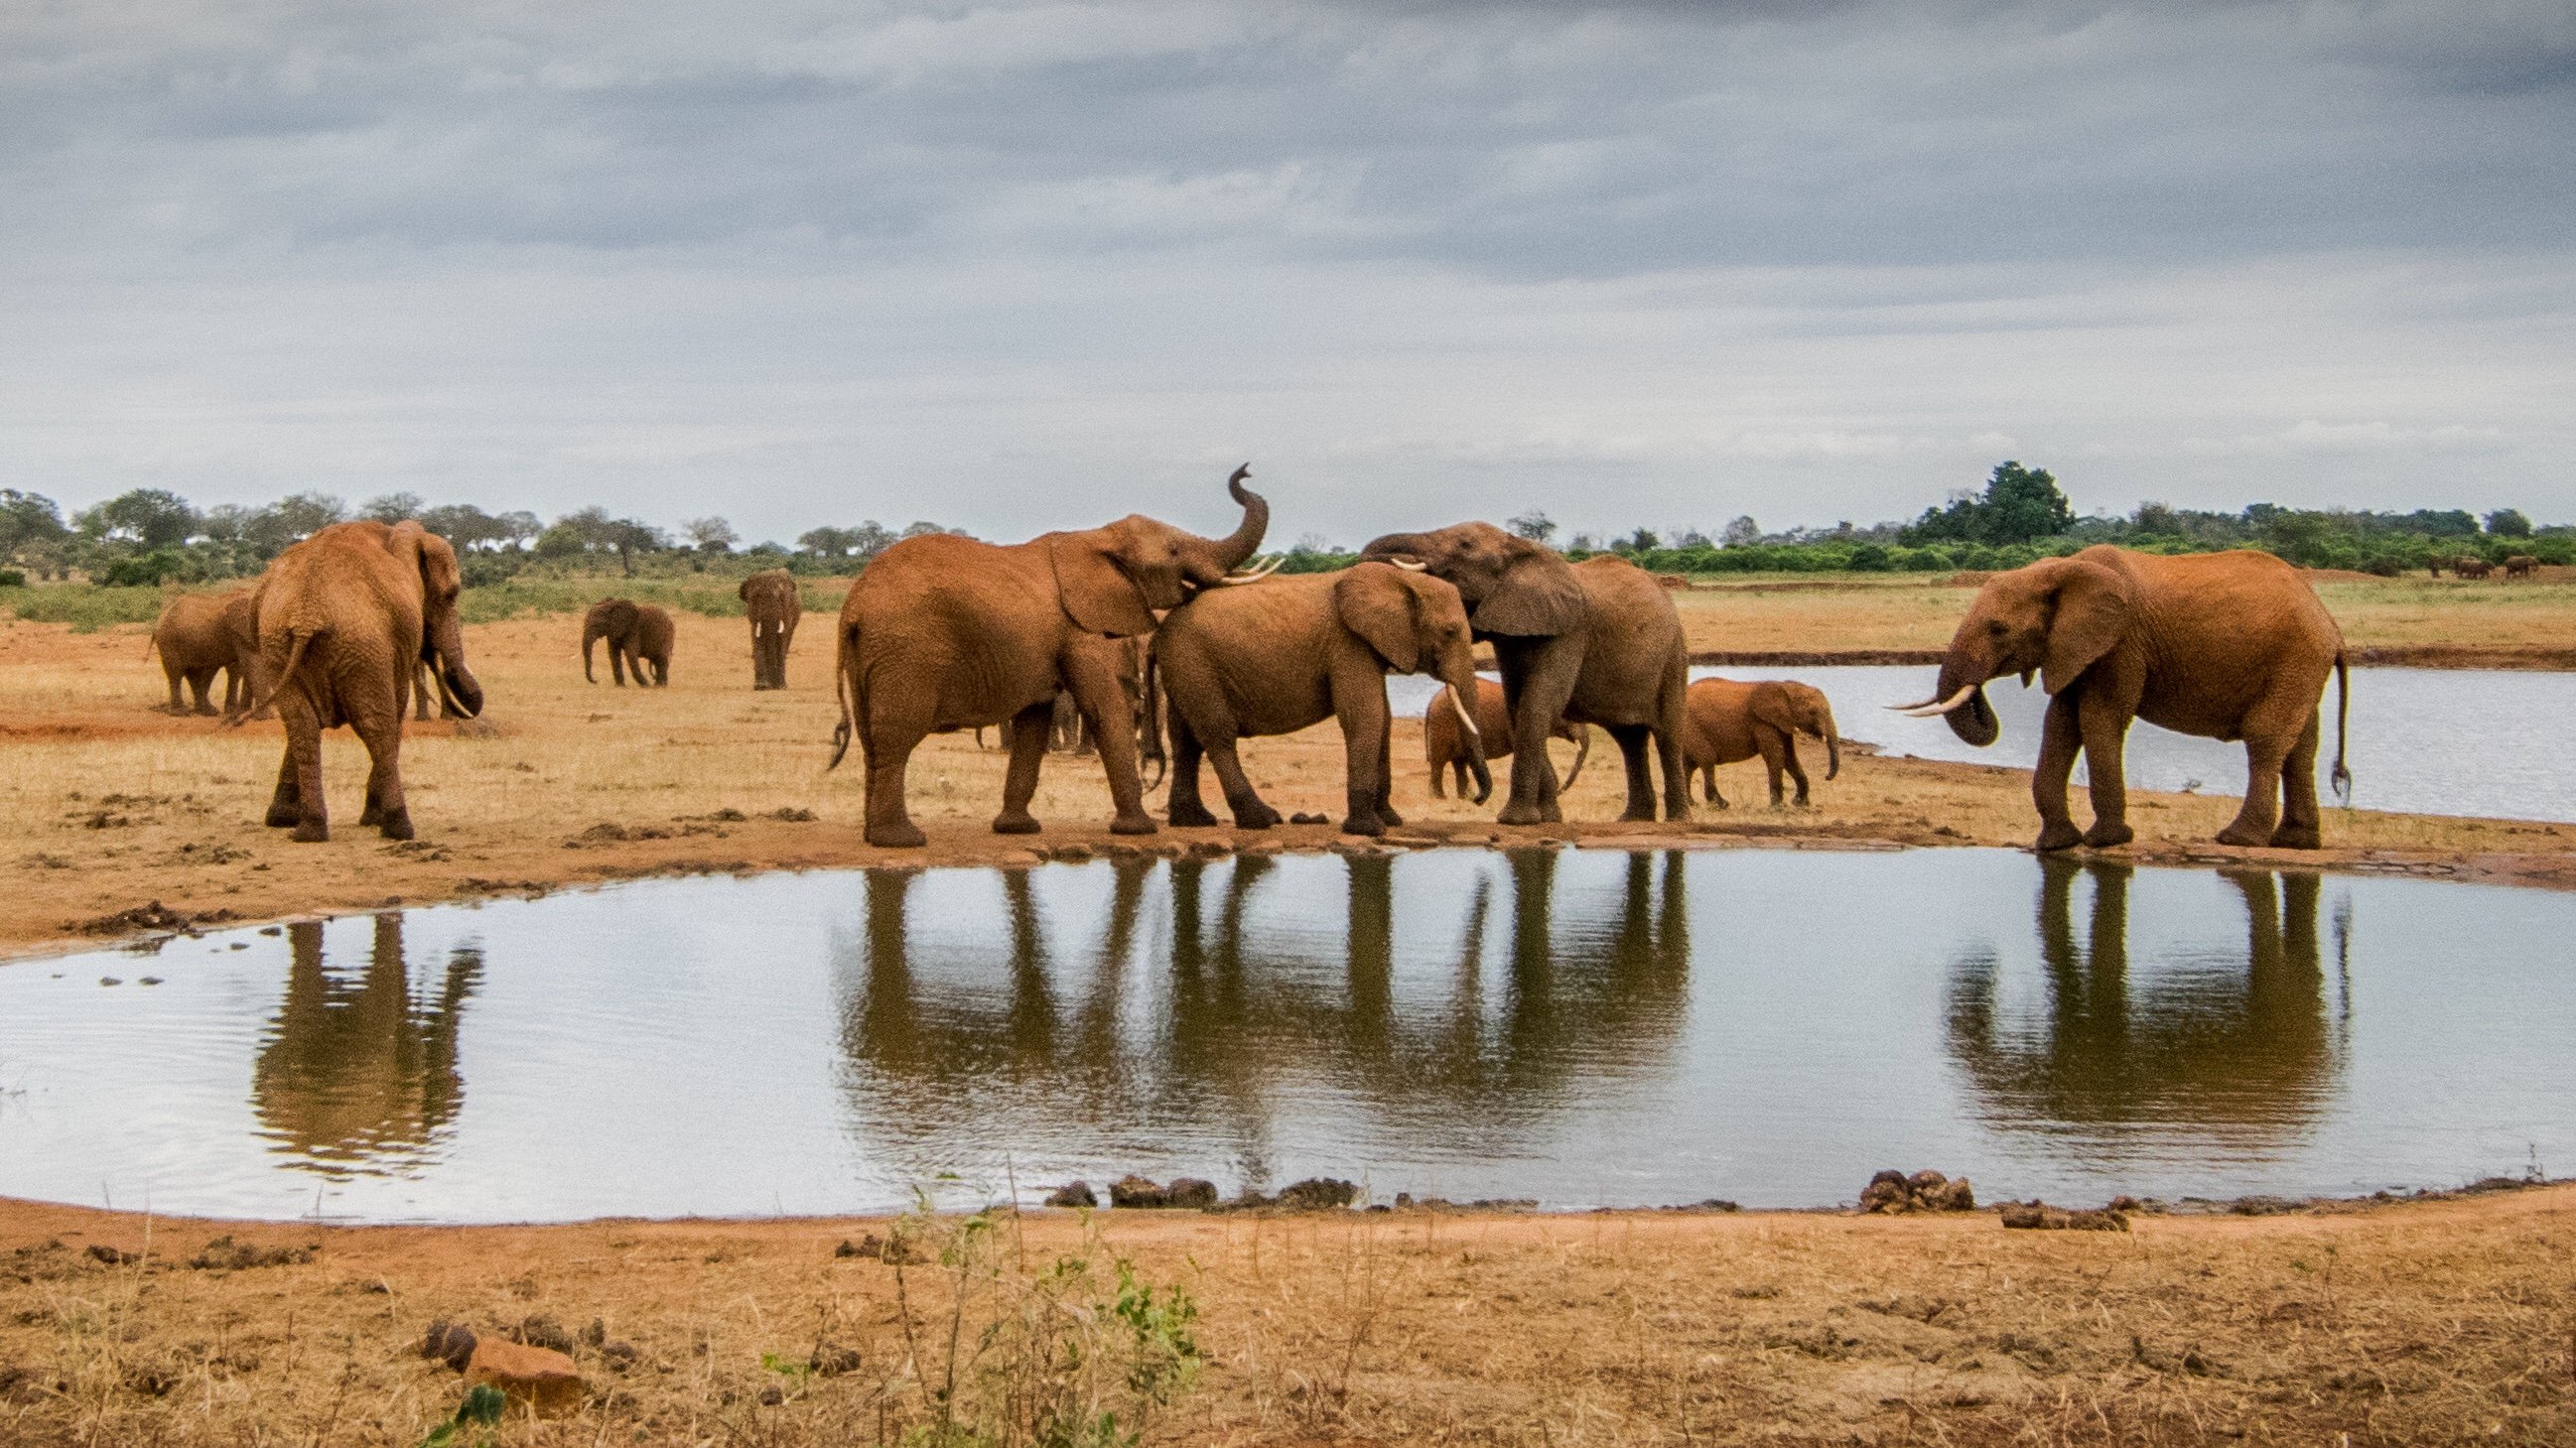 Слоны в кенийском национальном парке Цаво, где идет борьба с незаконными вырубками и вторжением домашнего скота на охраняемые территории. Фото: Джейн Виниярд (Jane Wynyard) / Save the Elephants.